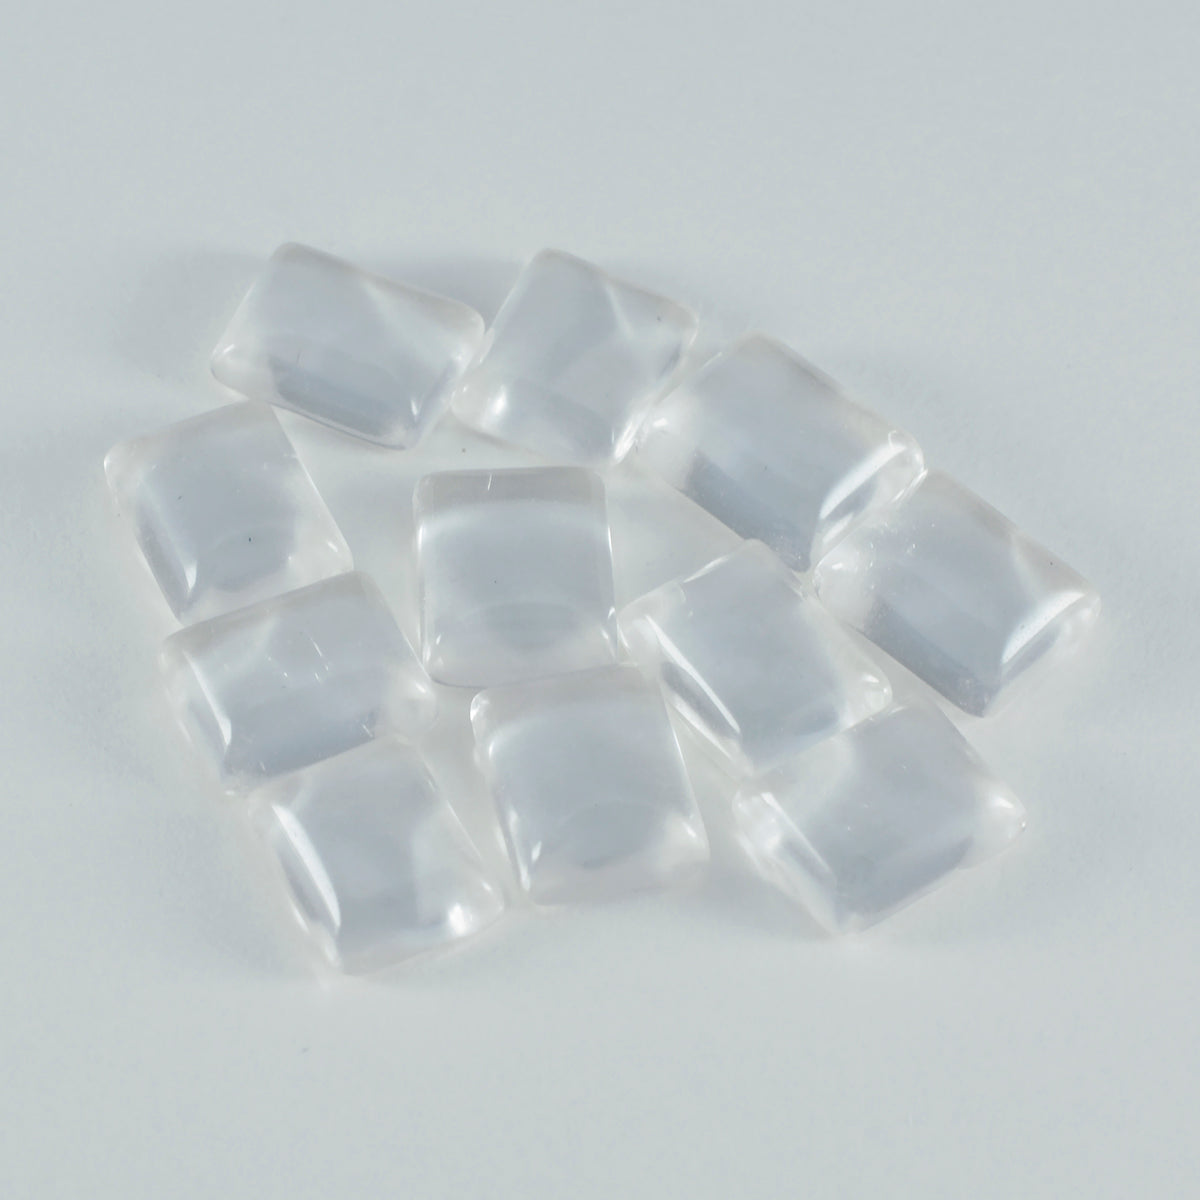 Riyogems 1 pieza cabujón de cuarzo cristal blanco 12x16mm forma octágono gema de calidad maravillosa